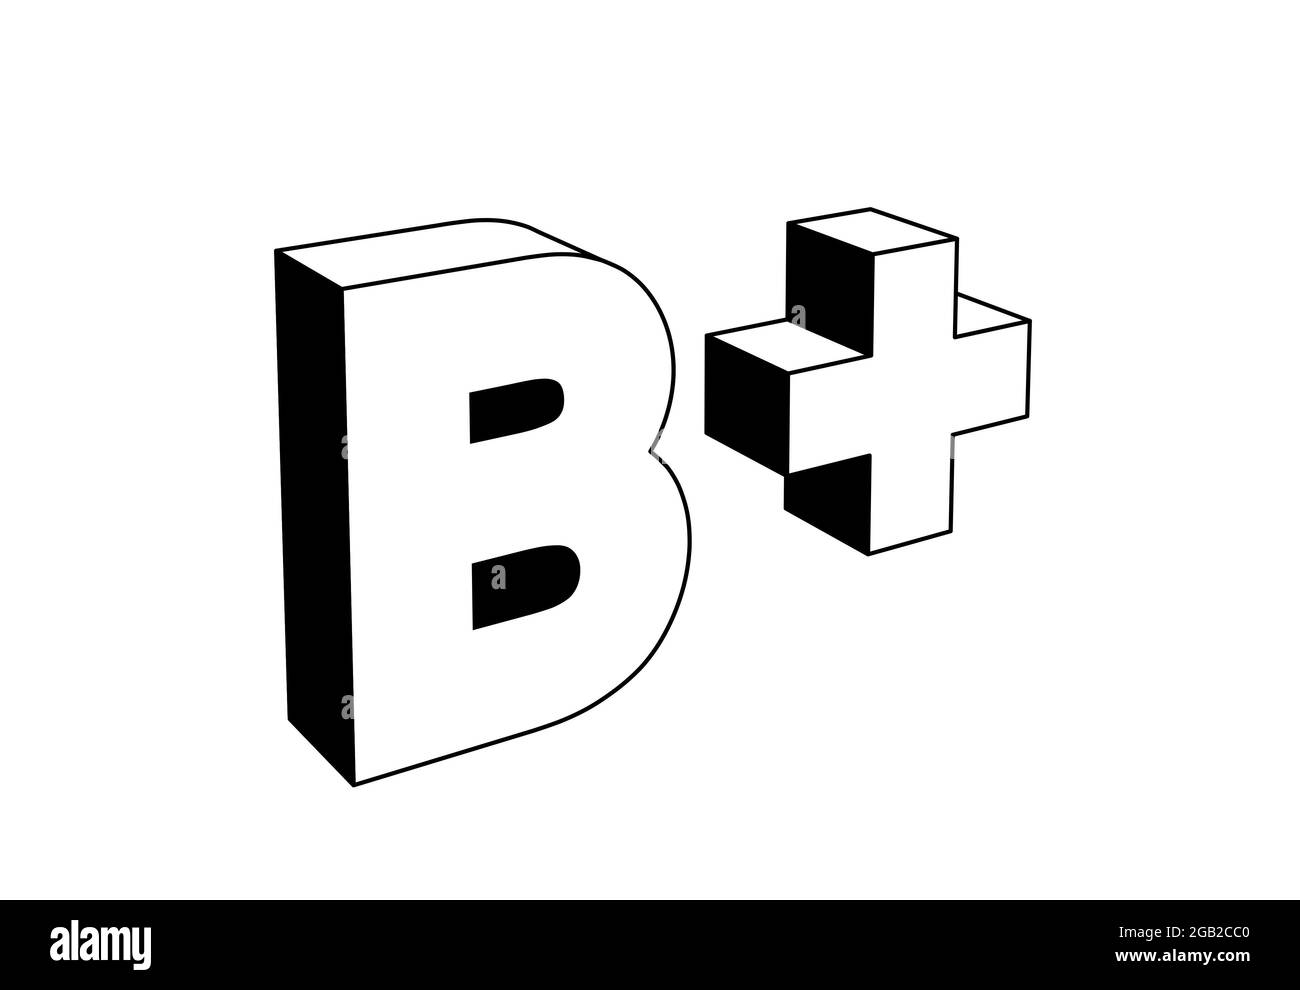 b plus Brief, Schuleinstufungssystem basierend auf Alphabetschriebbuchstaben, schwarz-weiße 3d-Illustration, Icon-Stil Stockfoto